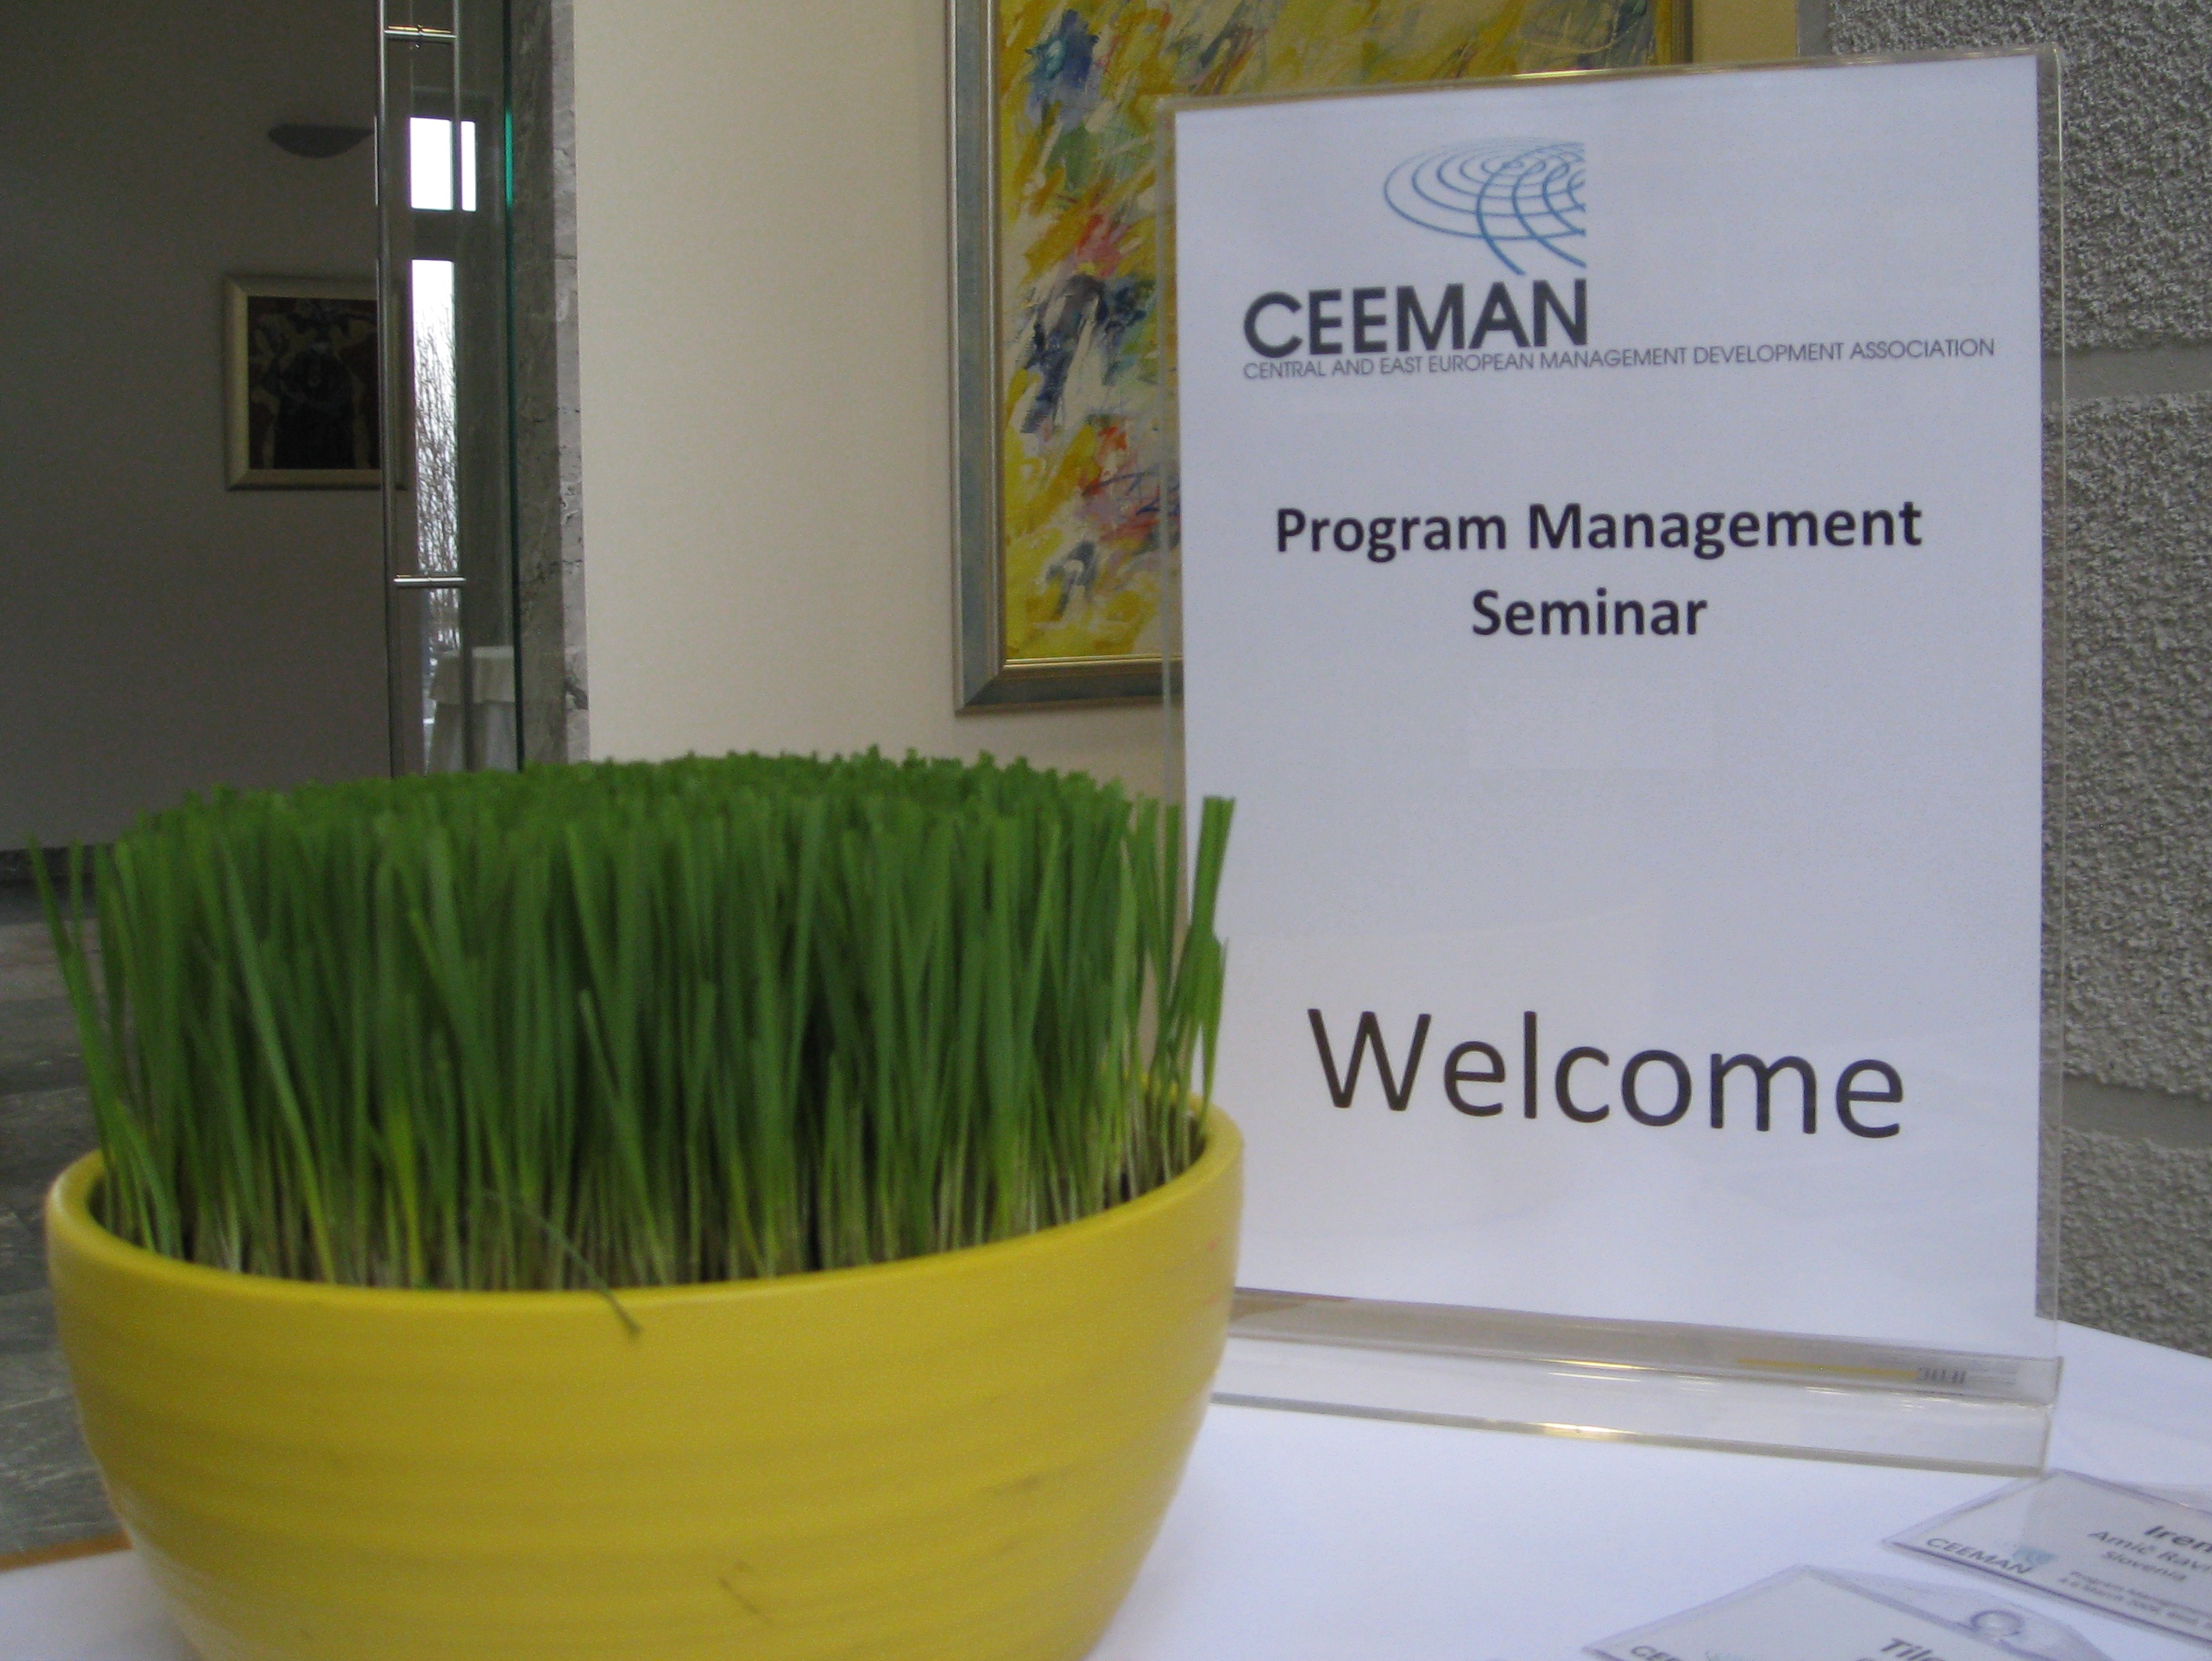 CEEMAN invites applications for Program Management Seminar 2012